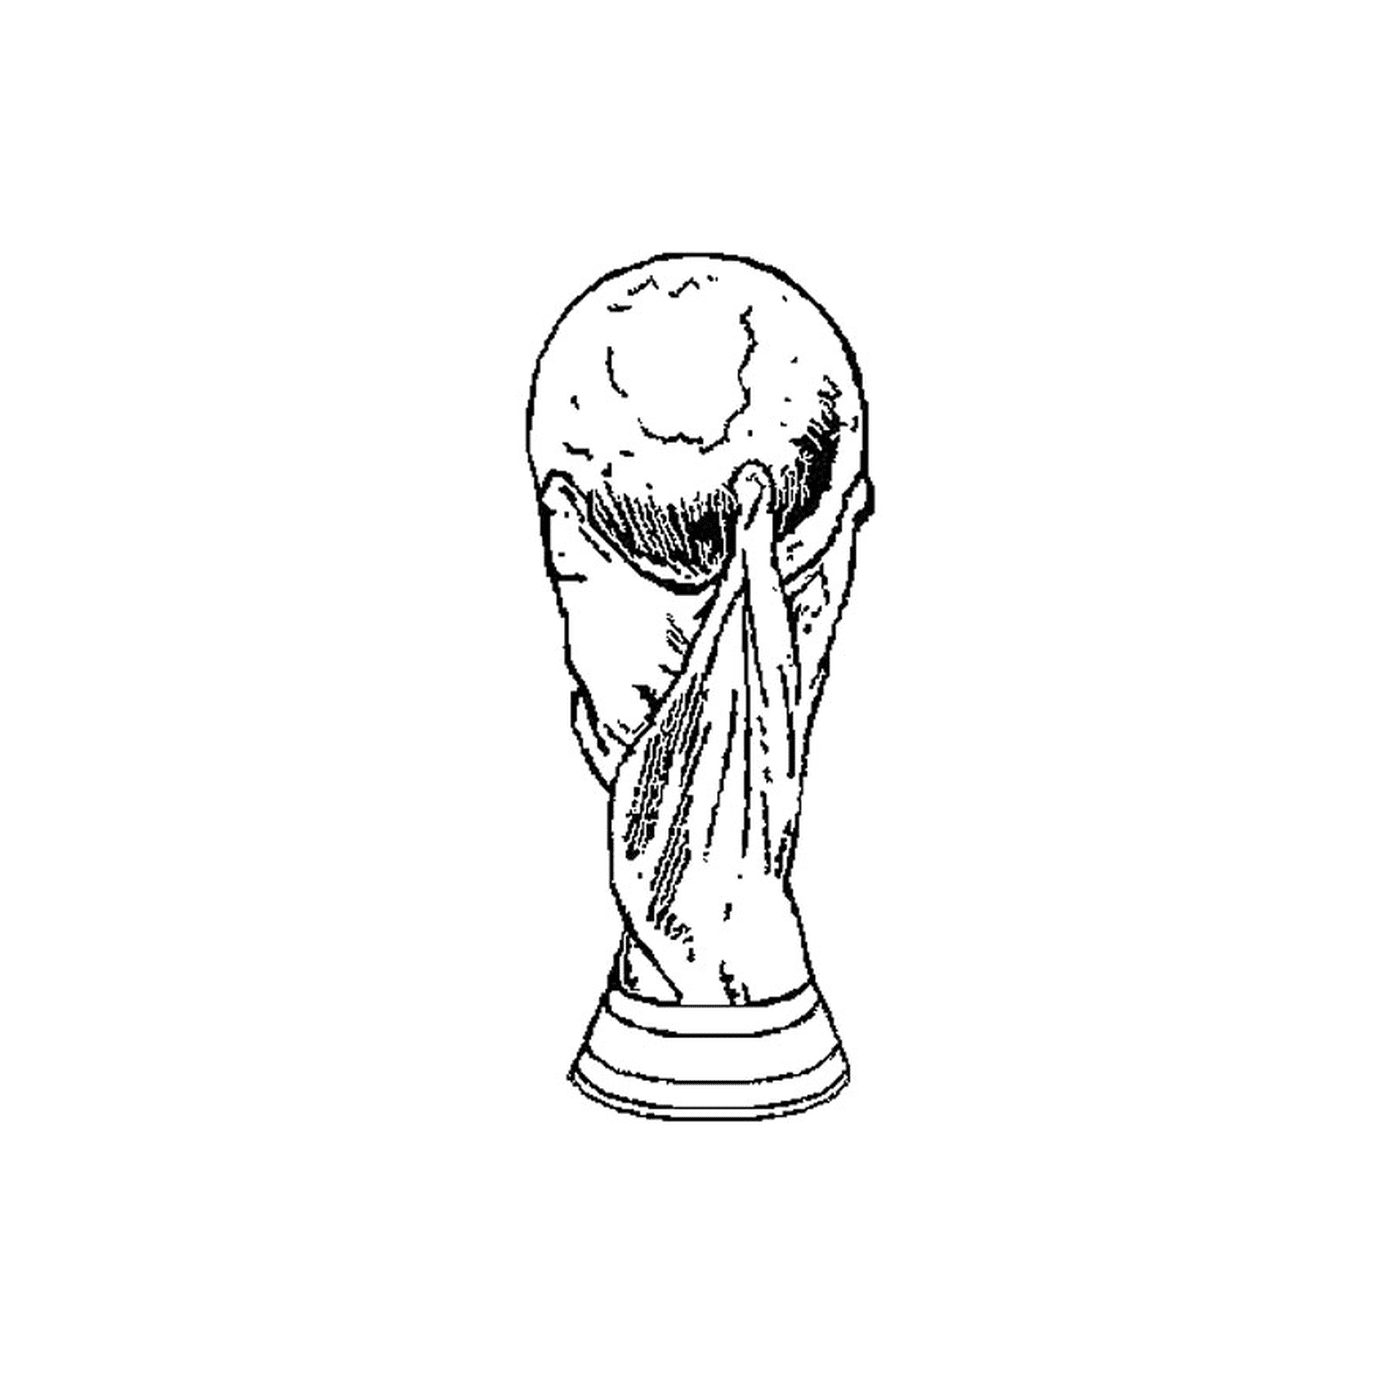  世界杯世界杯 